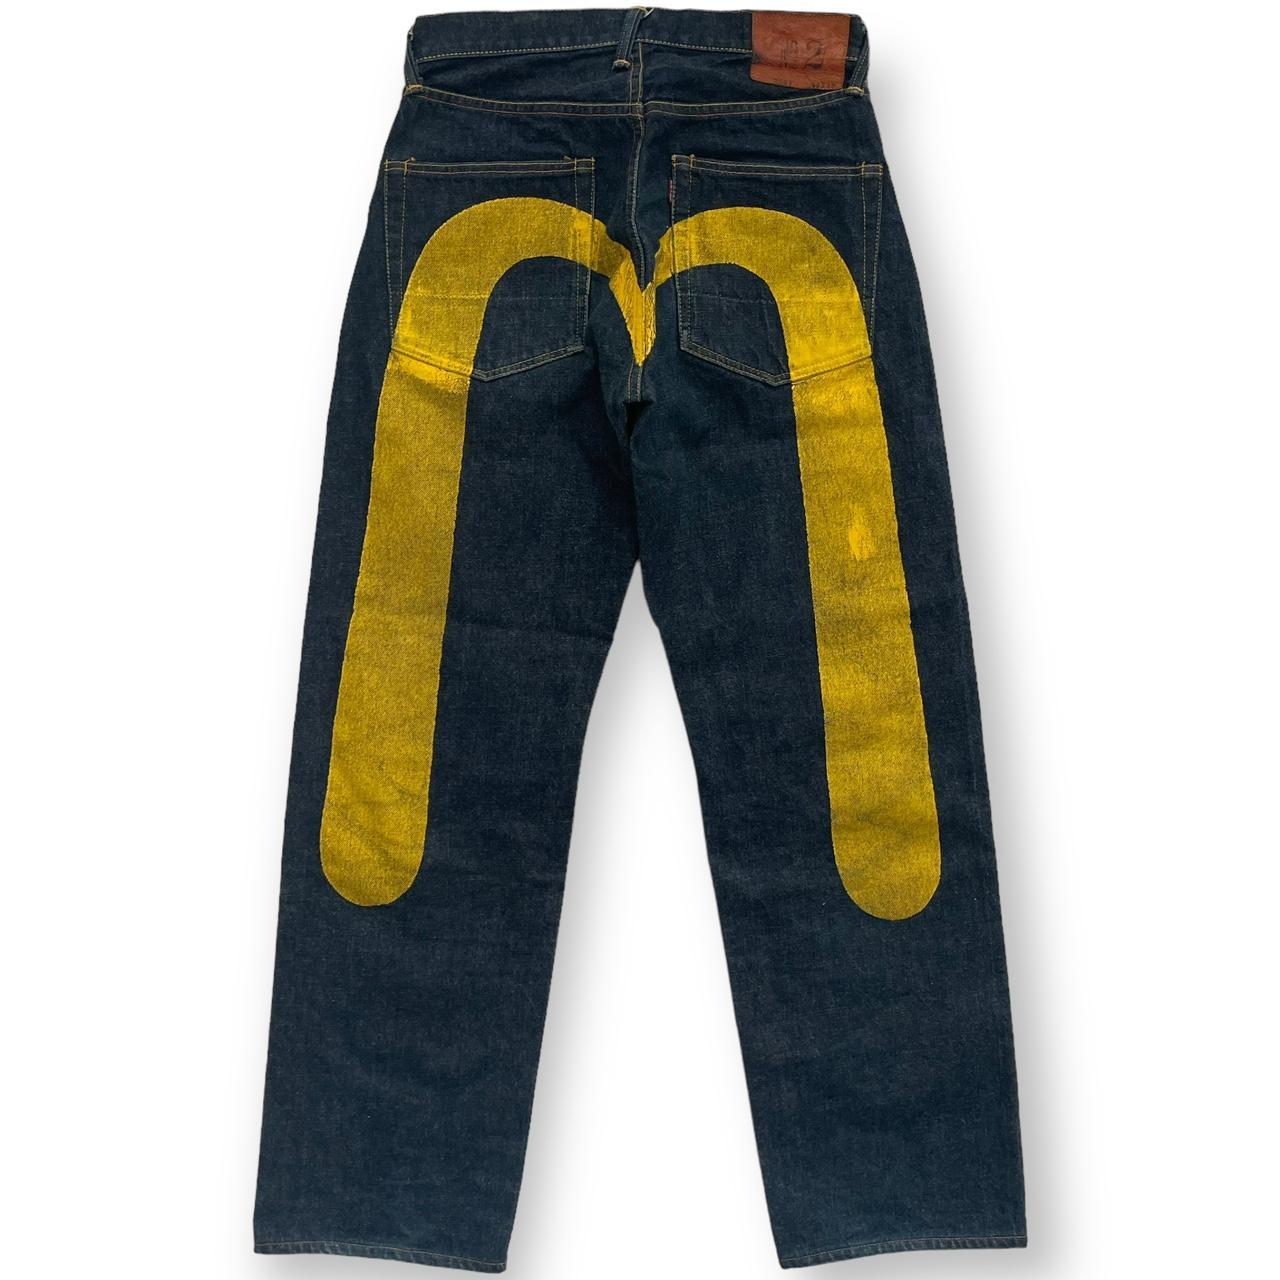 Evisu Men's Navy and Yellow Jeans | Depop